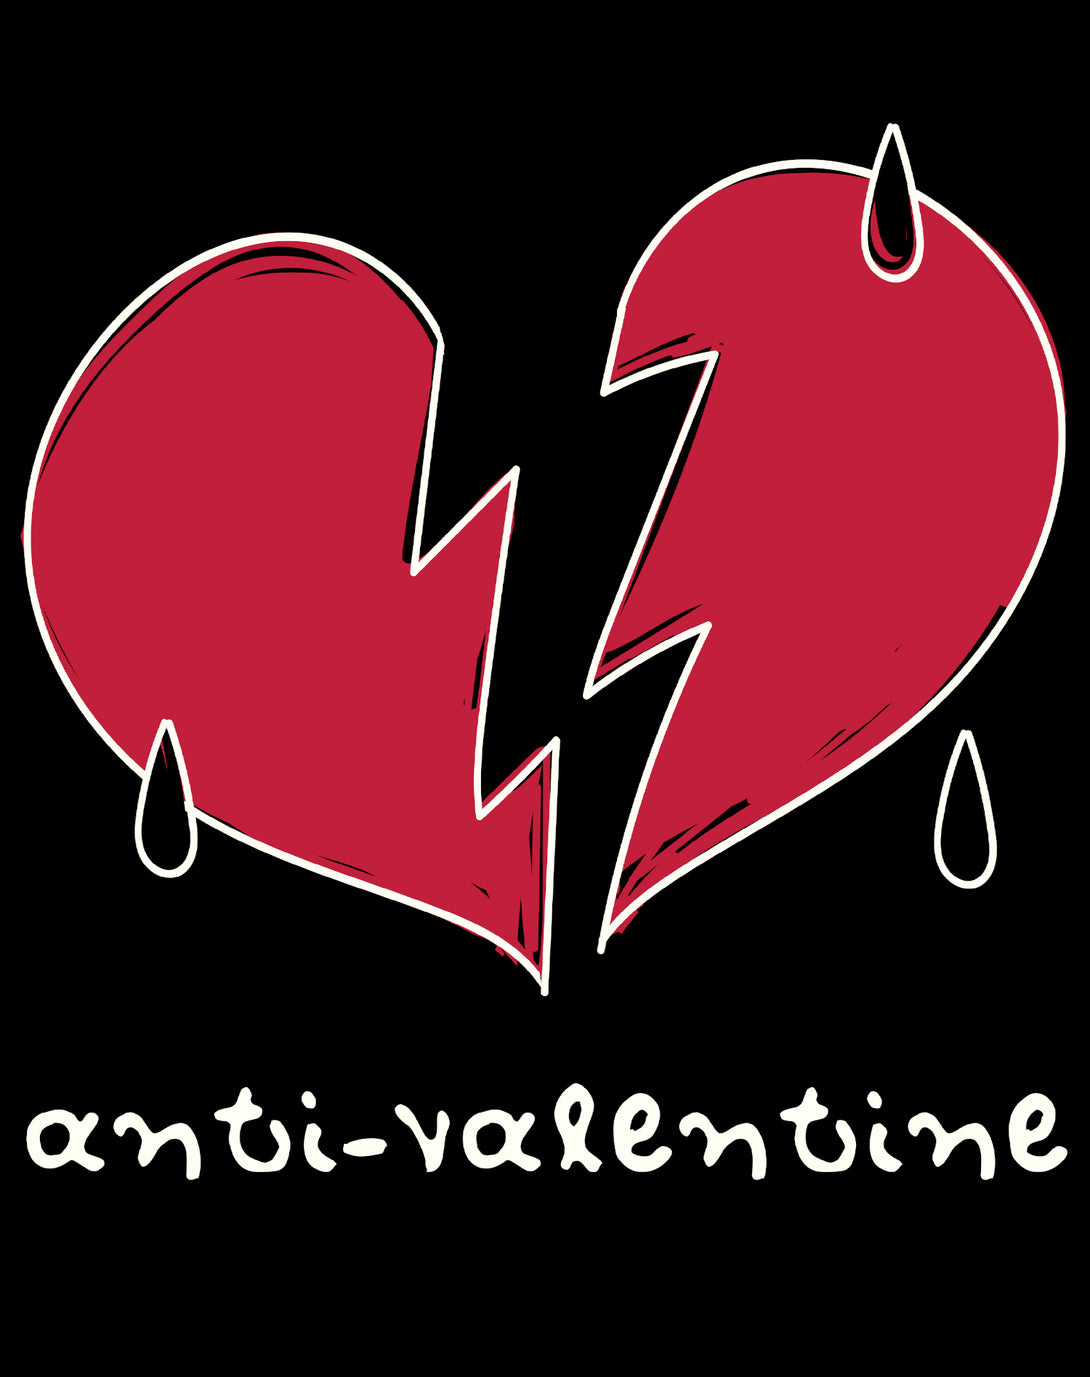 Anti Valentine Broken Weeping Heart Women's T-shirt Black - Urban Species Design Close Up